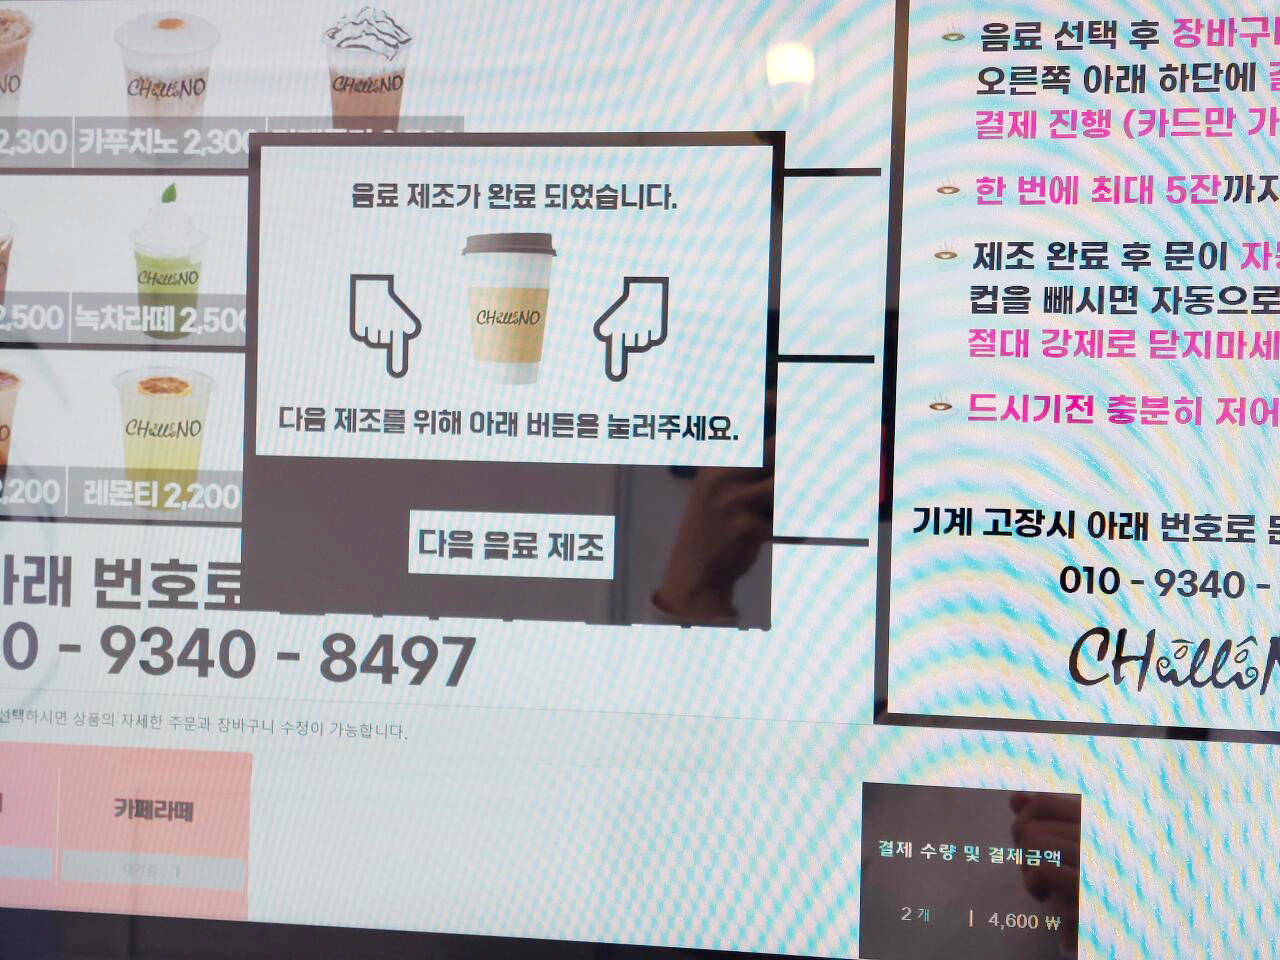 大邱∥CHILLINO 無人咖啡廳連鎖店(무인카페 칠리노)︱24 小時營運便宜咖啡，只能IC卡付款︱全韓國皆有分店︱韓國咖啡廳︱韓國咖啡 17 CHILLINO 16